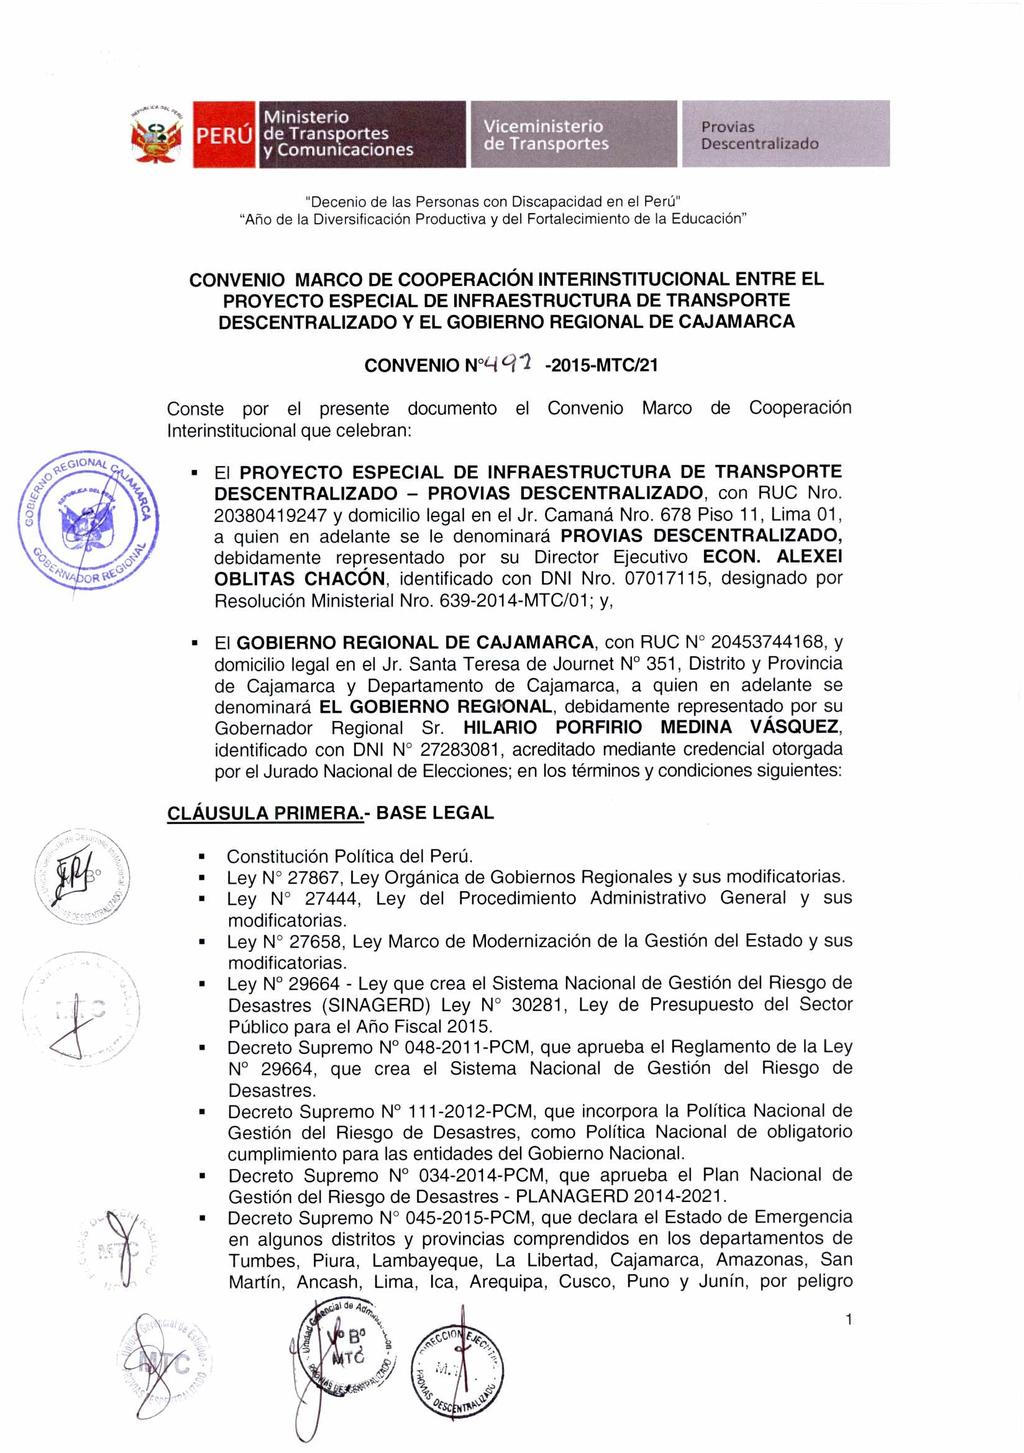 PERÚ CONVENIO MARCO DE COOPERACIÓN INTERINSTITUCIONAL ENTRE EL PROYECTO ESPECIAL DE INFRAESTRUCTURA DE TRANSPORTE DESCENTRALIZADO Y EL GOBIERNO REGIONAL DE CAJAMARCA CONVENIO N L-i (-11-2015-MTC/21